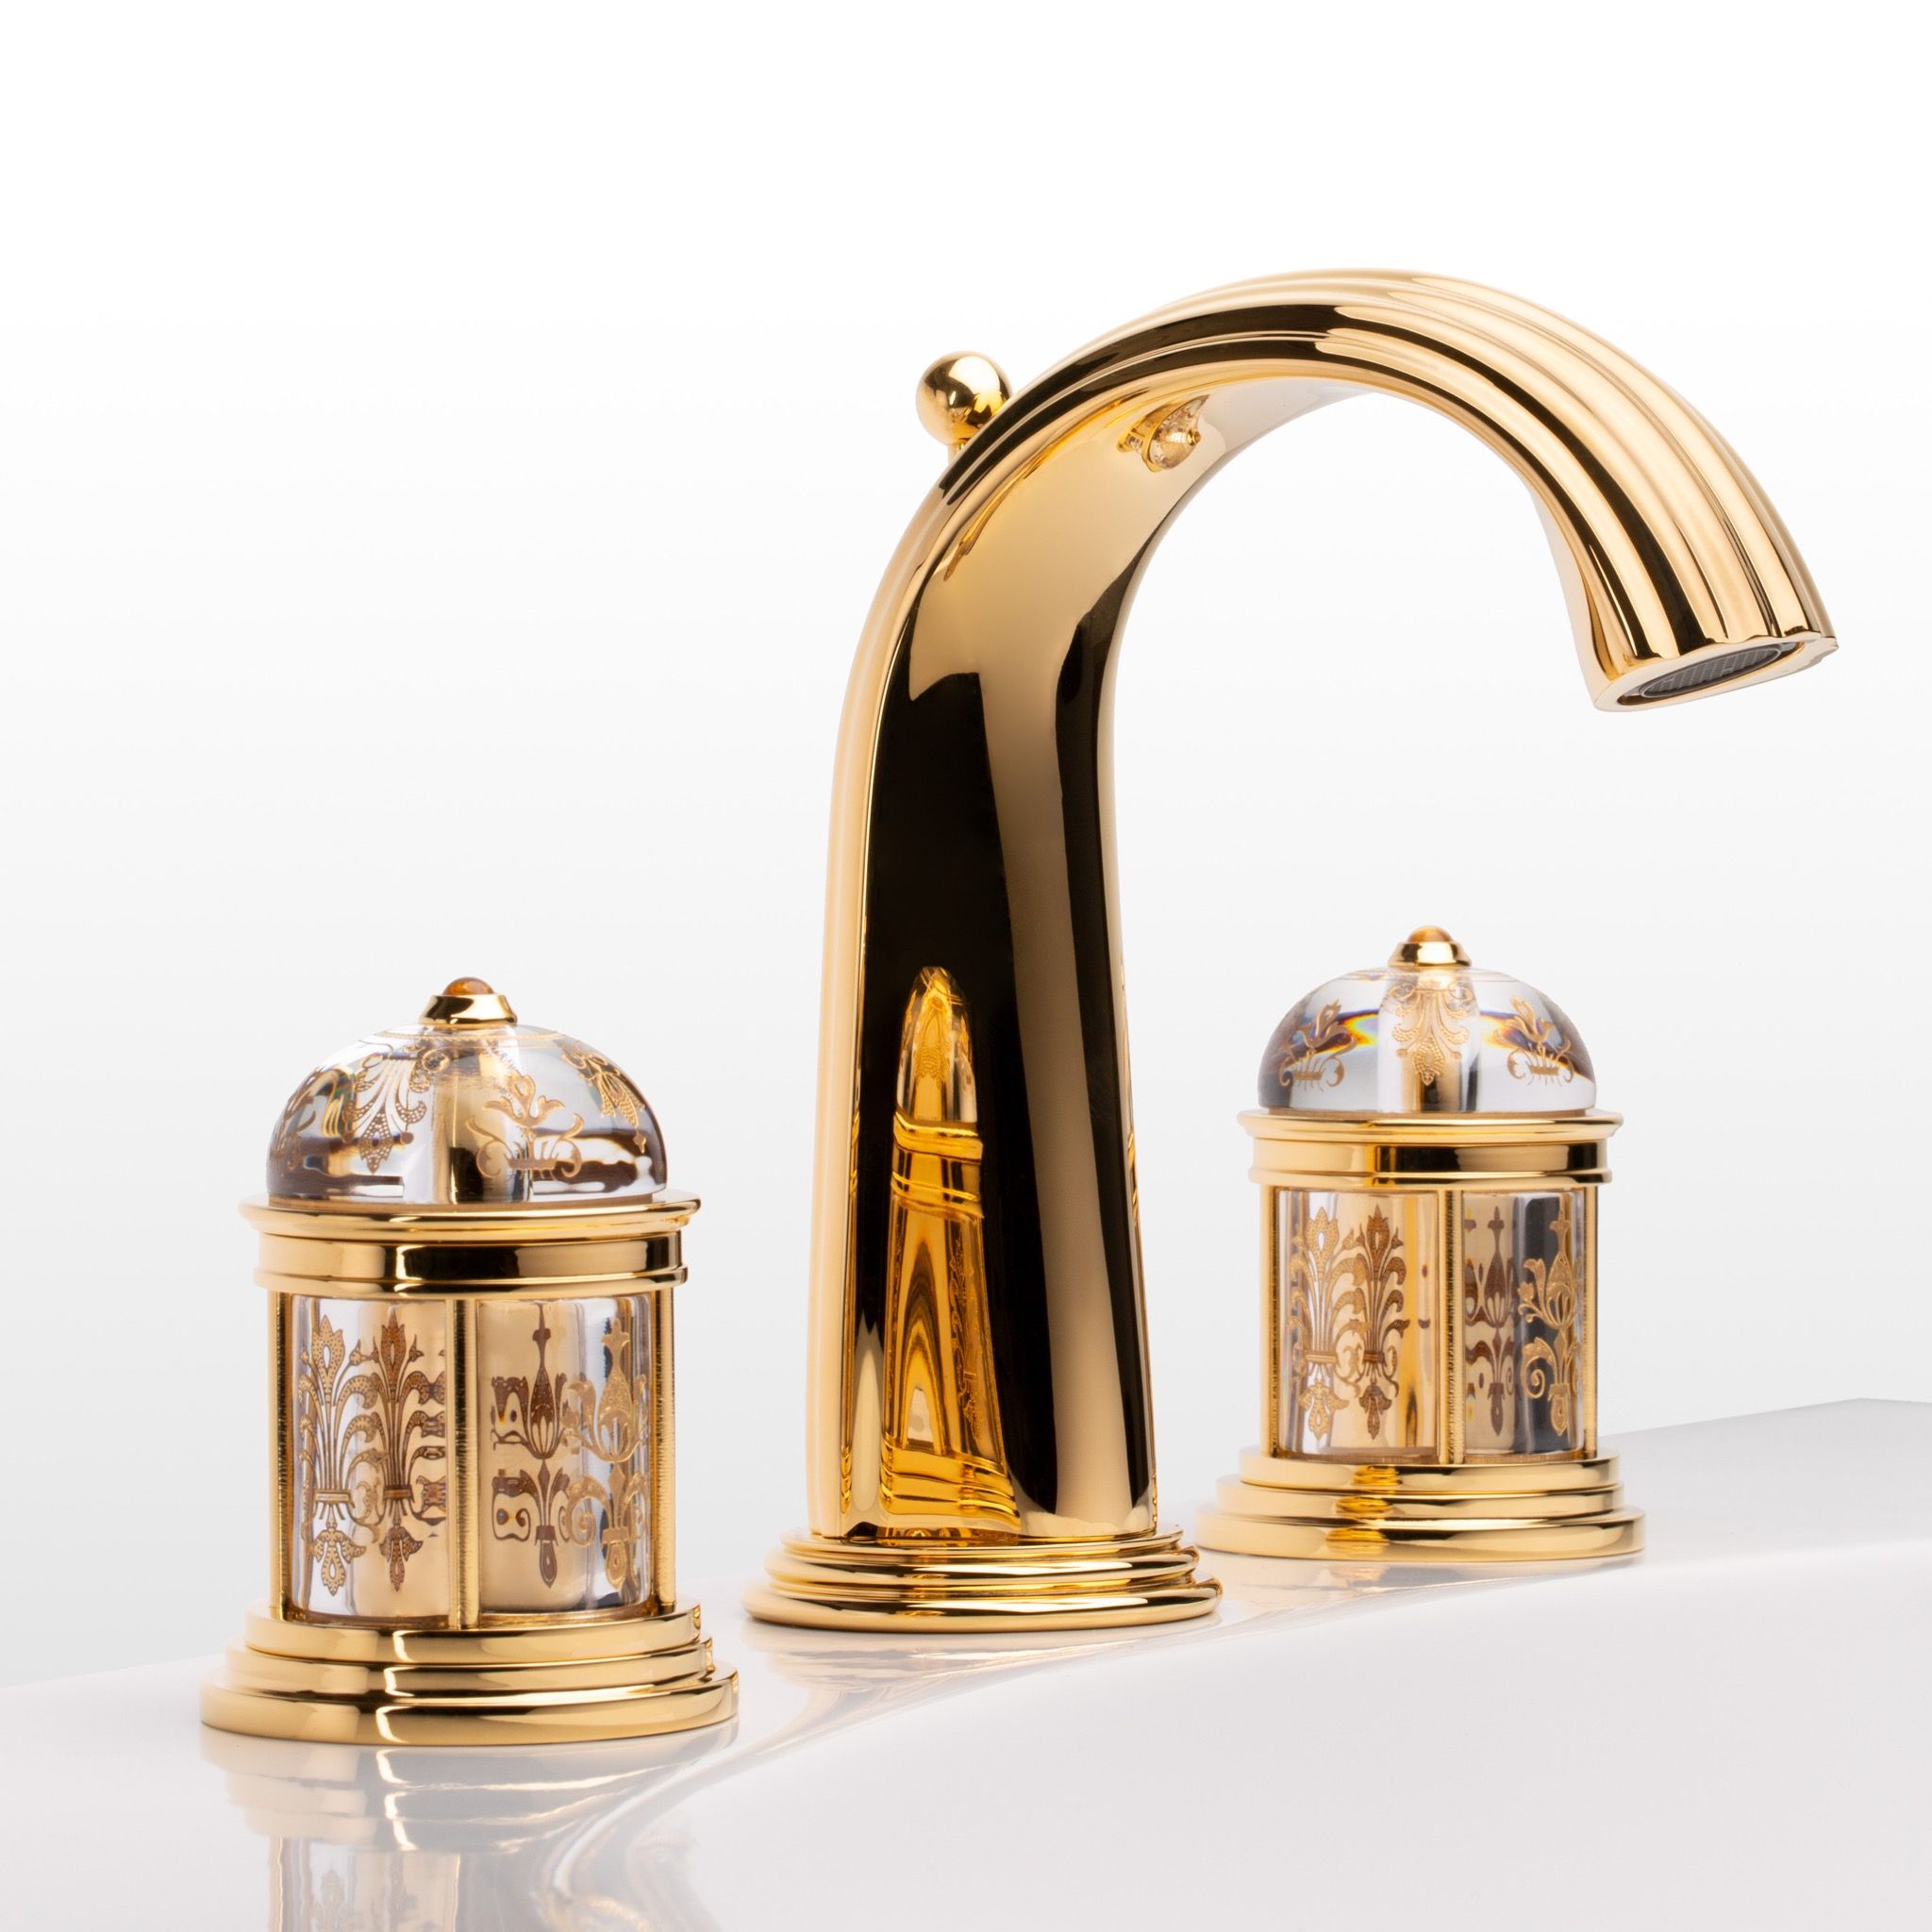  Vòi chậu rửa mặt cổ điển Rambouillet polished gold bằng đồng - 1301 